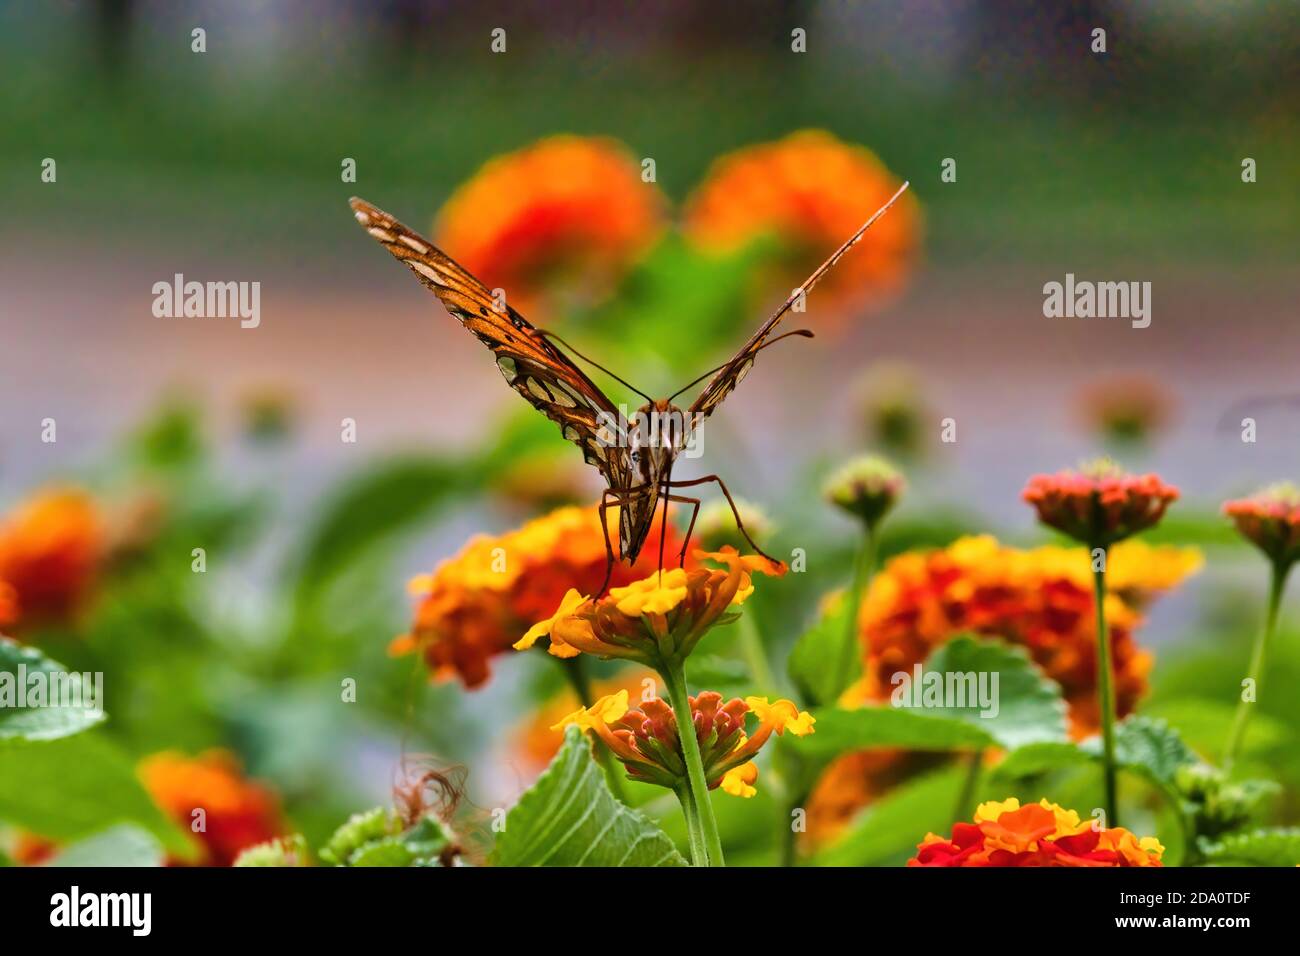 Direttamente sulla vista di un colorato golfo fritellario farfalla. Foto Stock